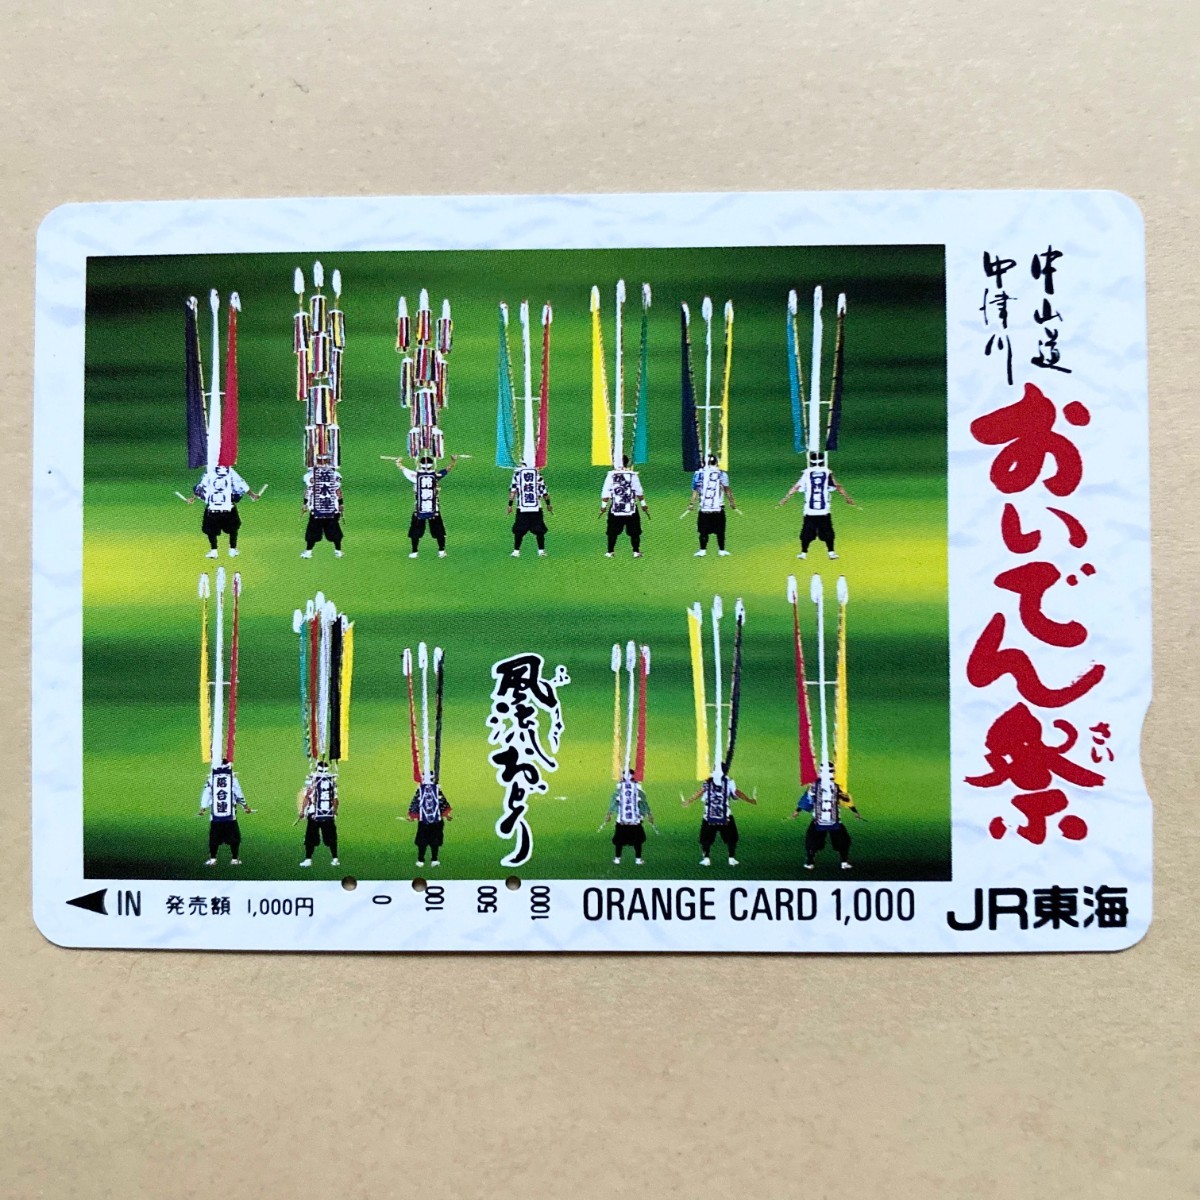 【使用済】 オレンジカード JR東海 中津川 中山道 おいでん祭 風流おどり_画像1